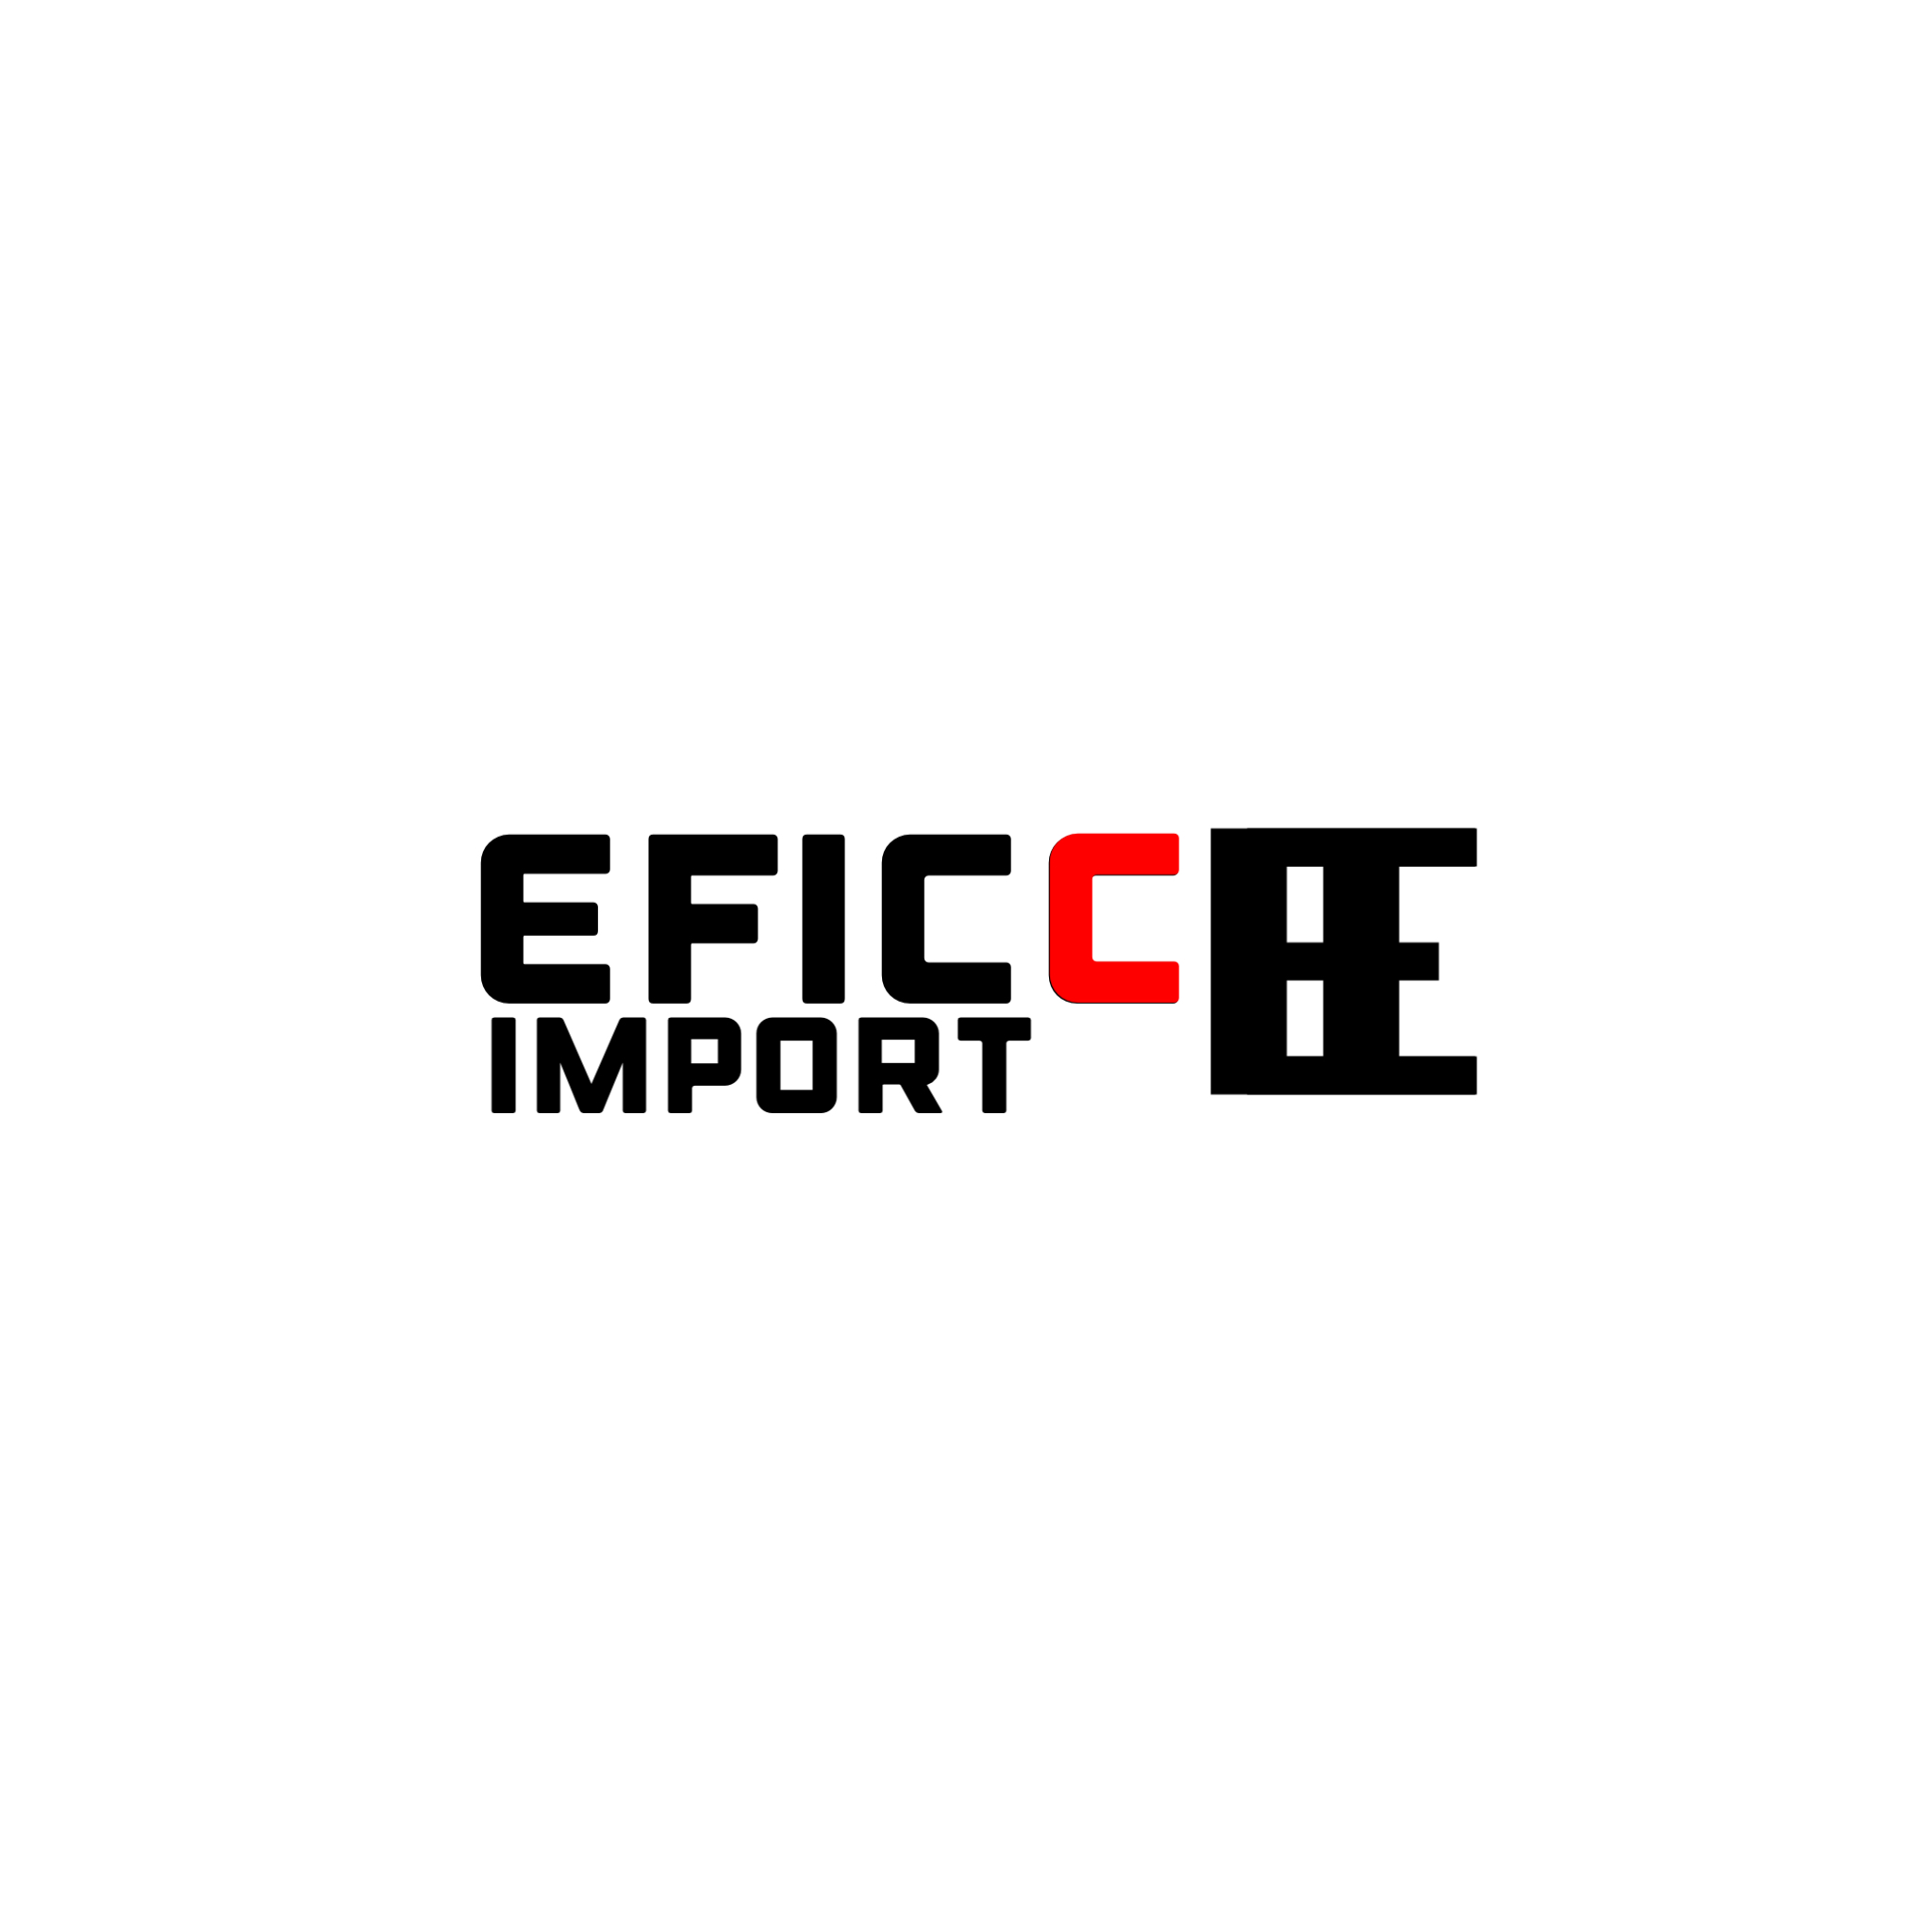 EFICC IMPORT ロゴ